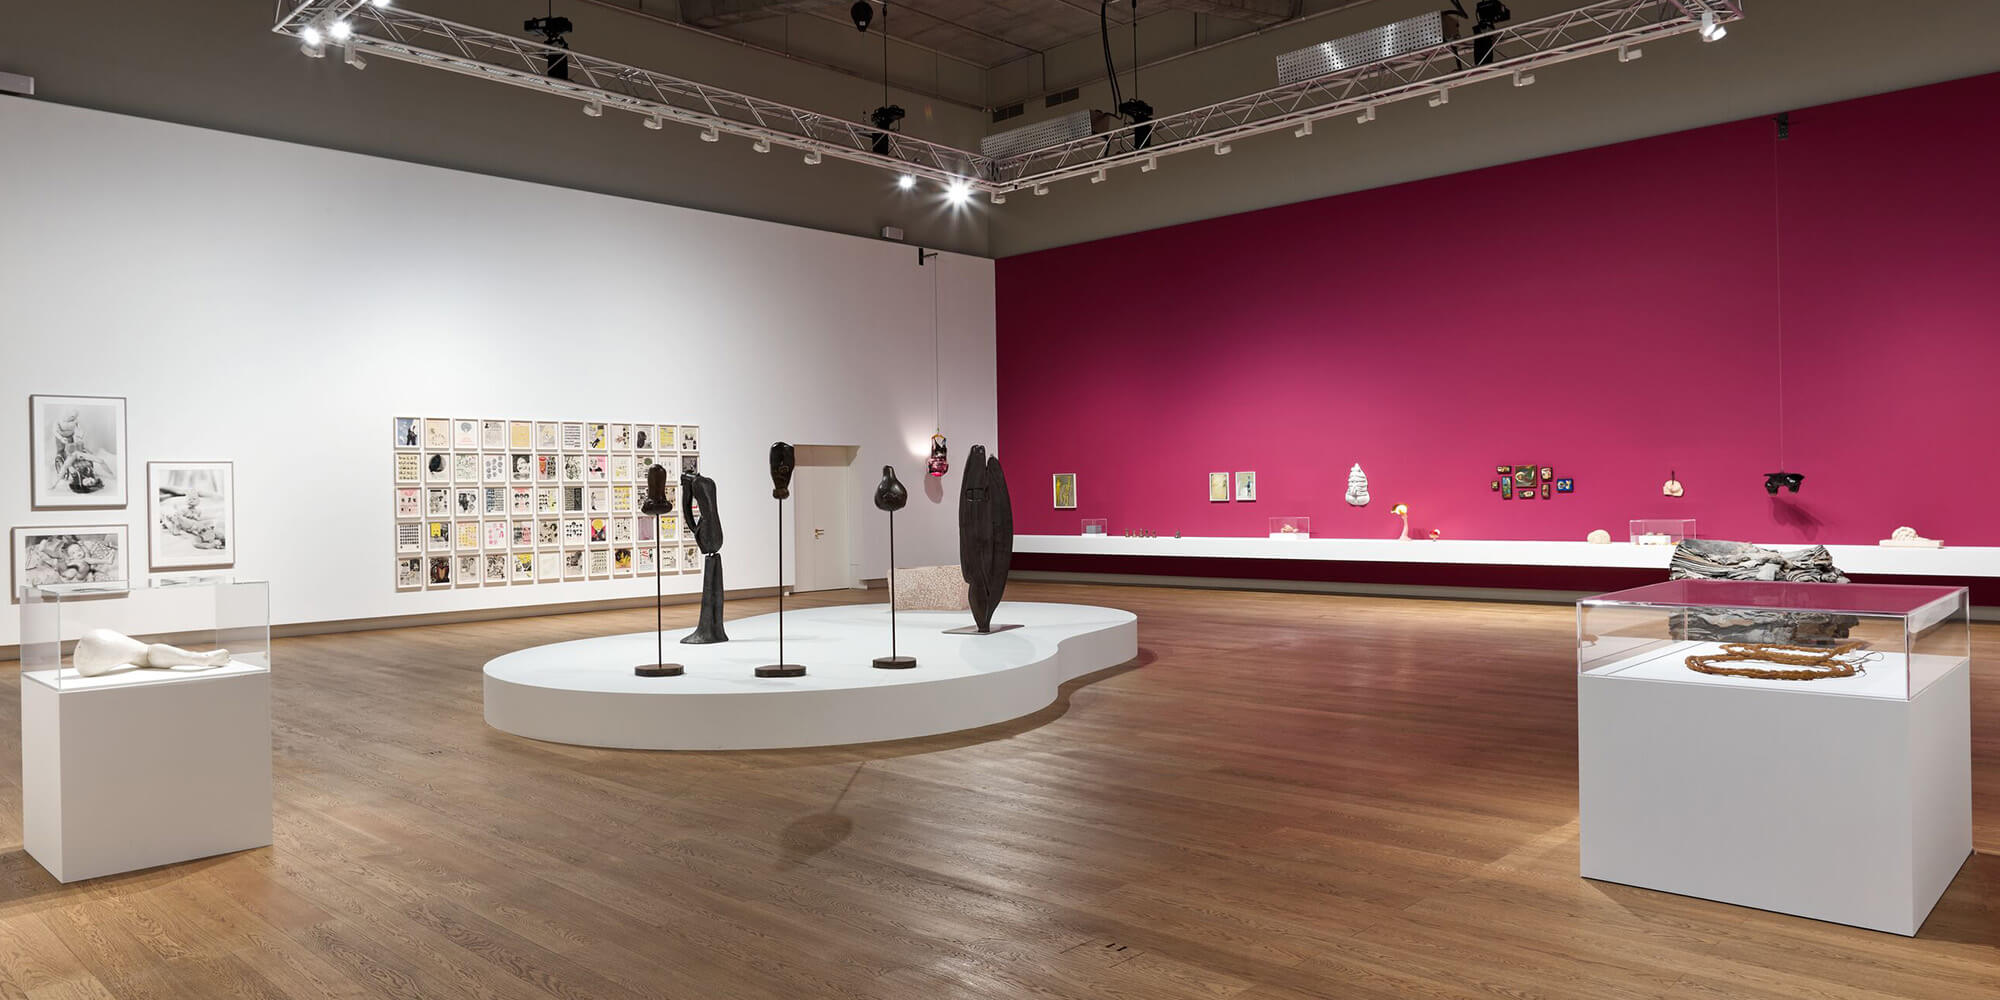 Glenstone announces Louise Bourgeois exhibit - The Washington Post